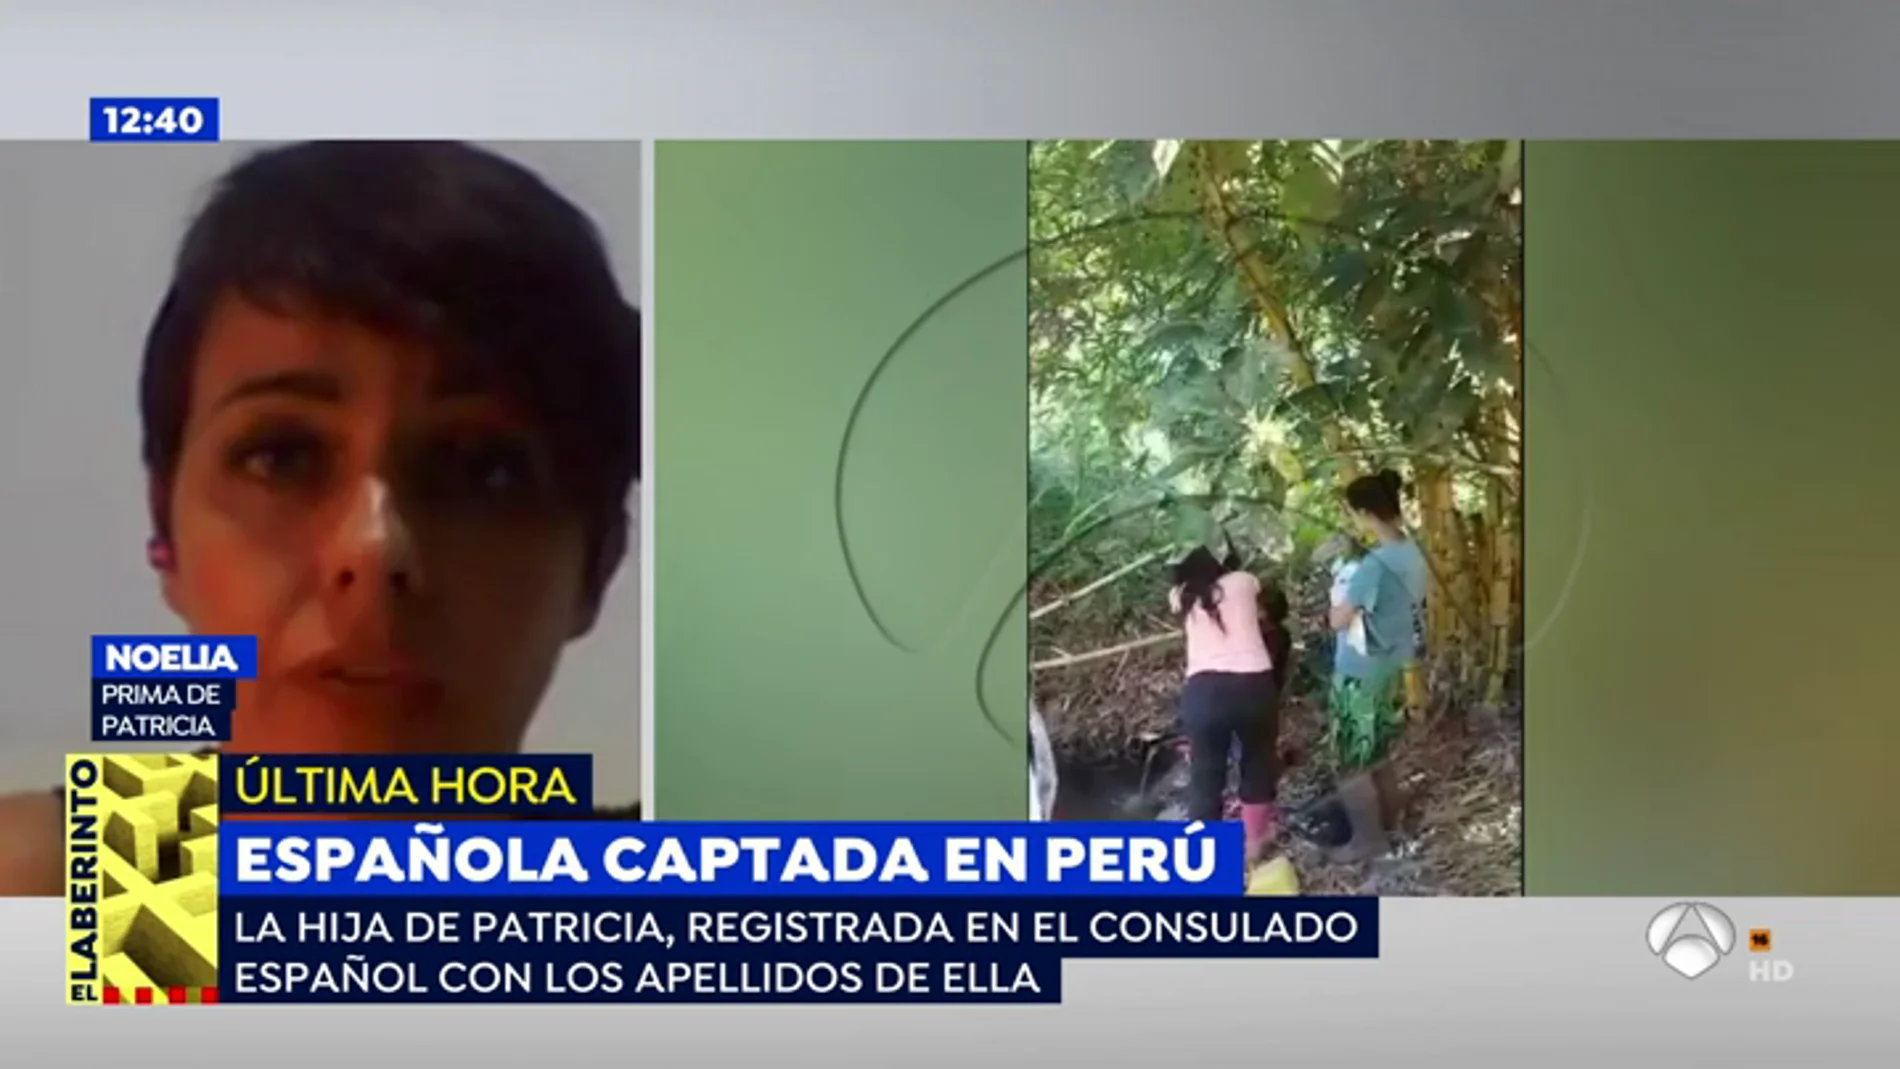 La prima de la joven captada en Perú, sobre su vuelta a España: "Me asusta saber que sólo hemos visto la punta del iceberg"